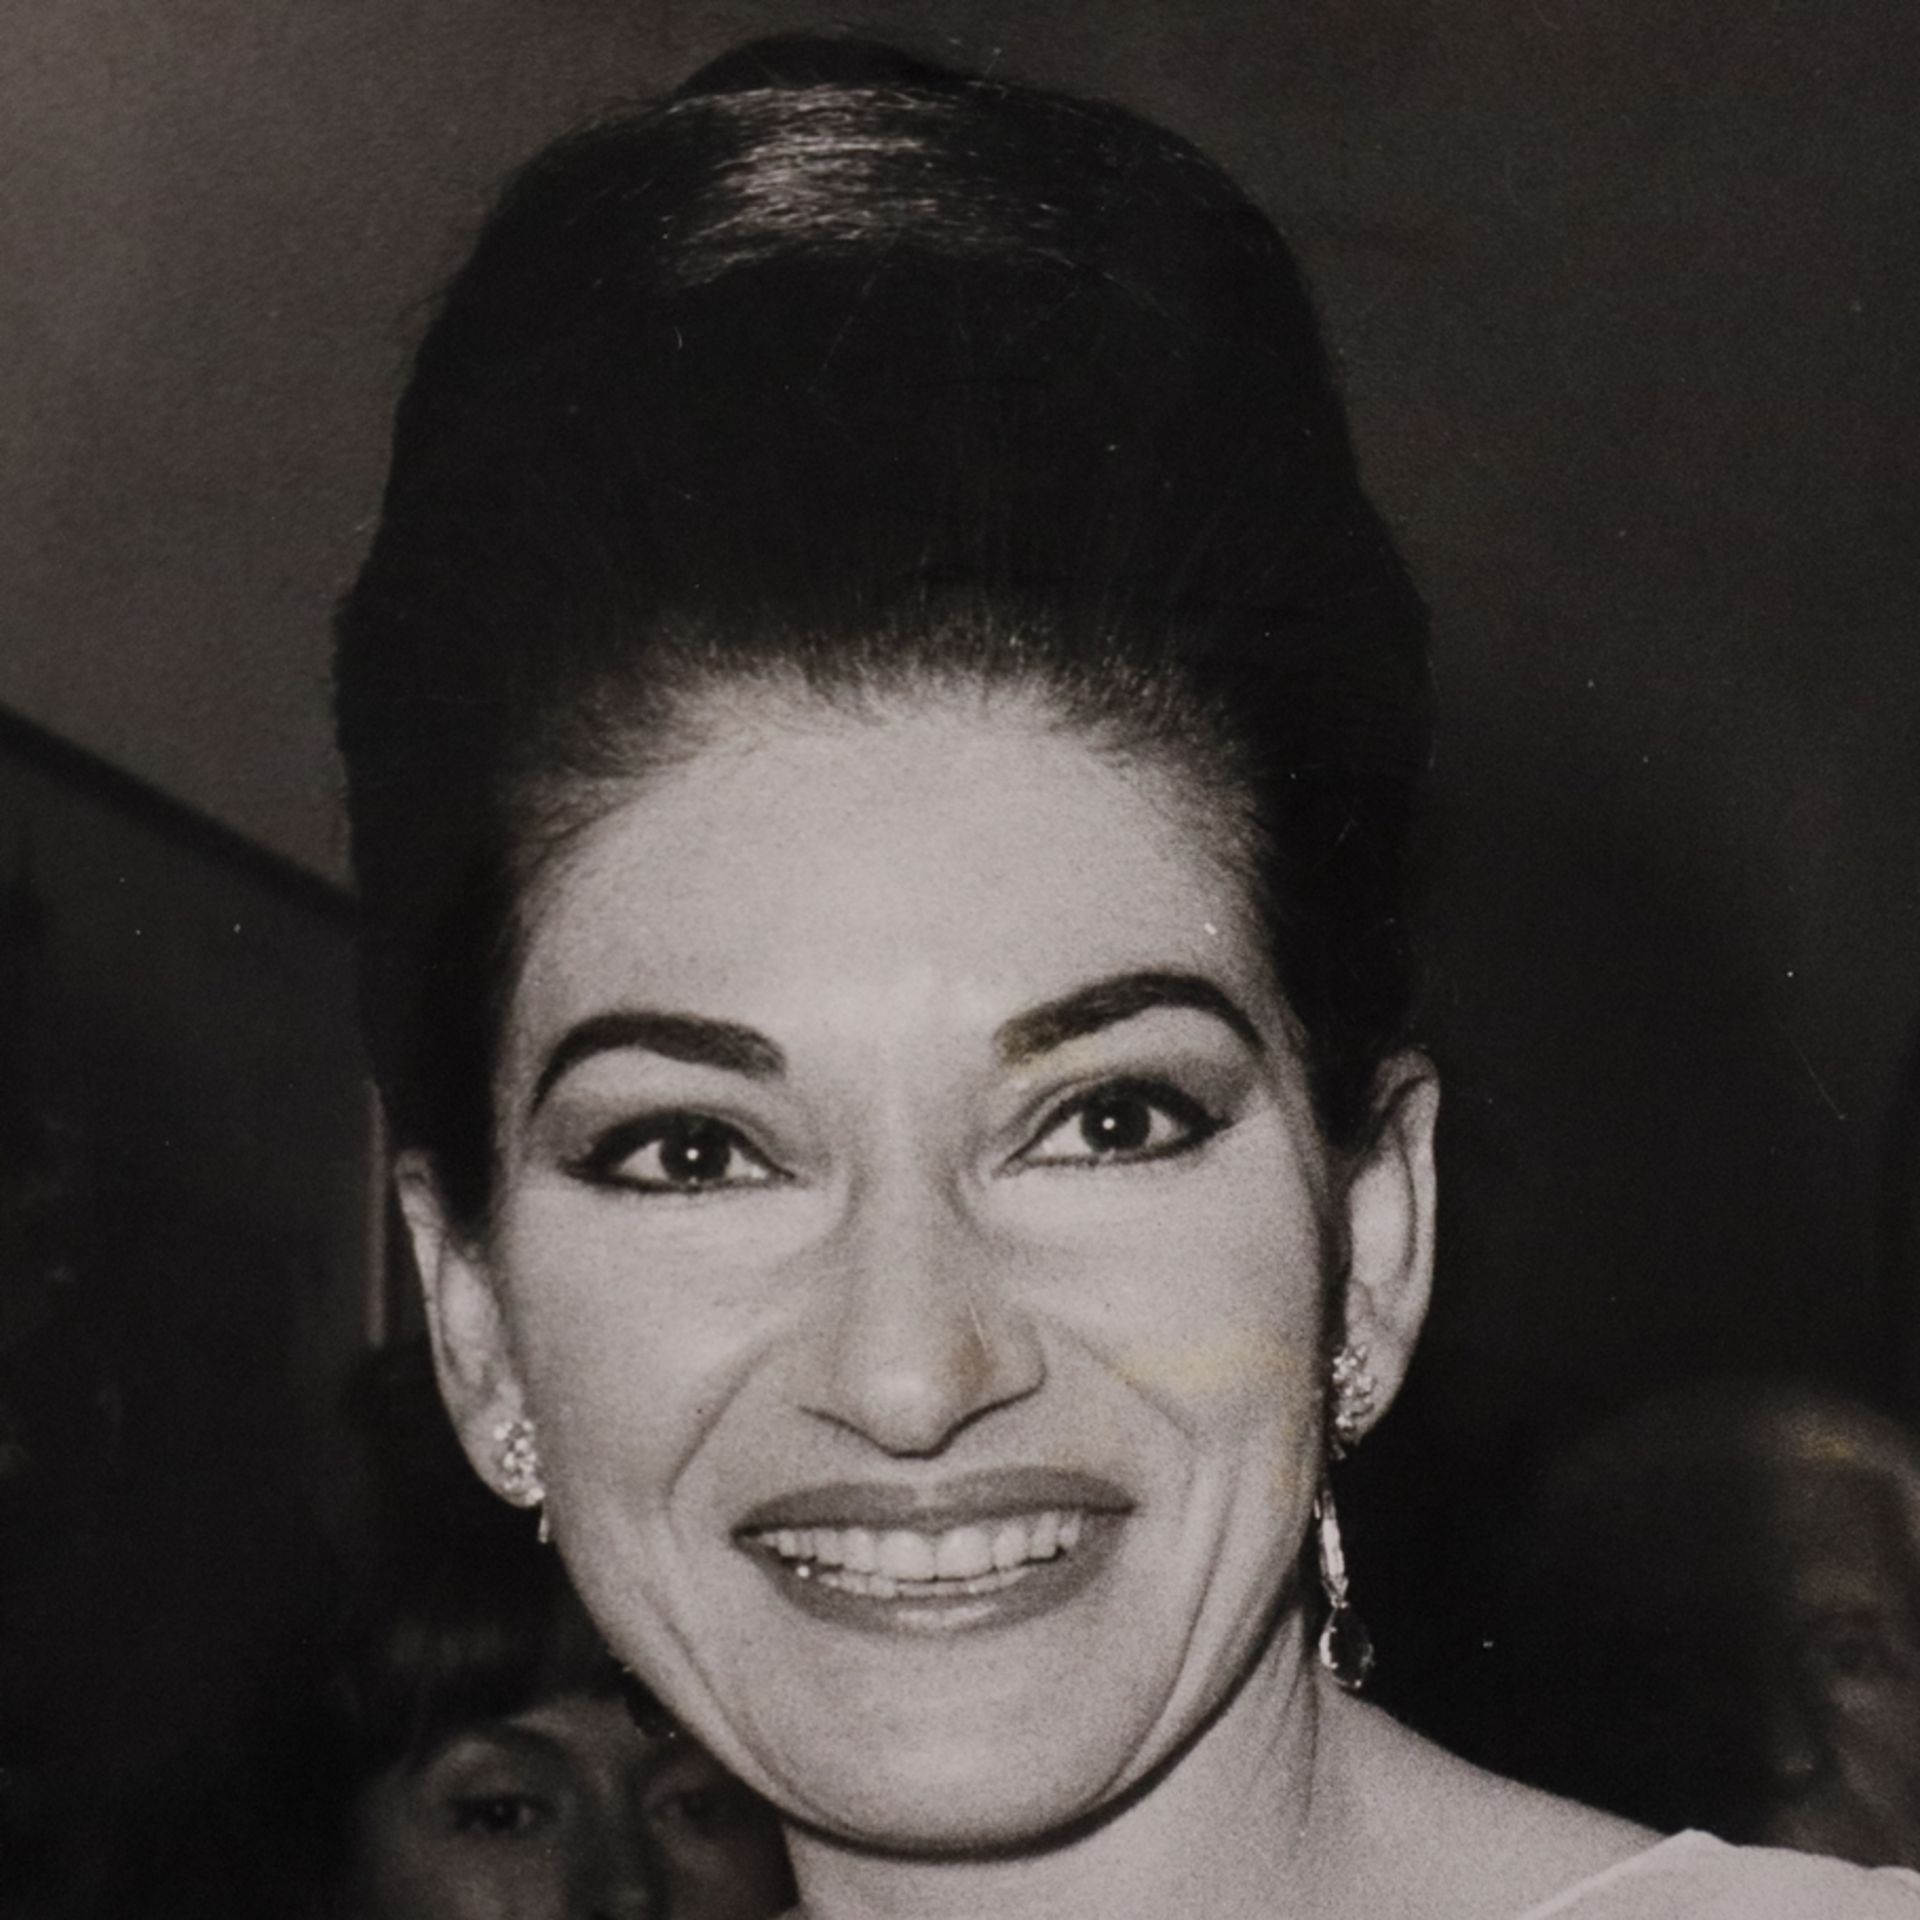 Konvolut: Drei Fotografien von Maria Callas - s/w Fotografien, verso handschriftlich bezeichnet "Lu - Image 5 of 7